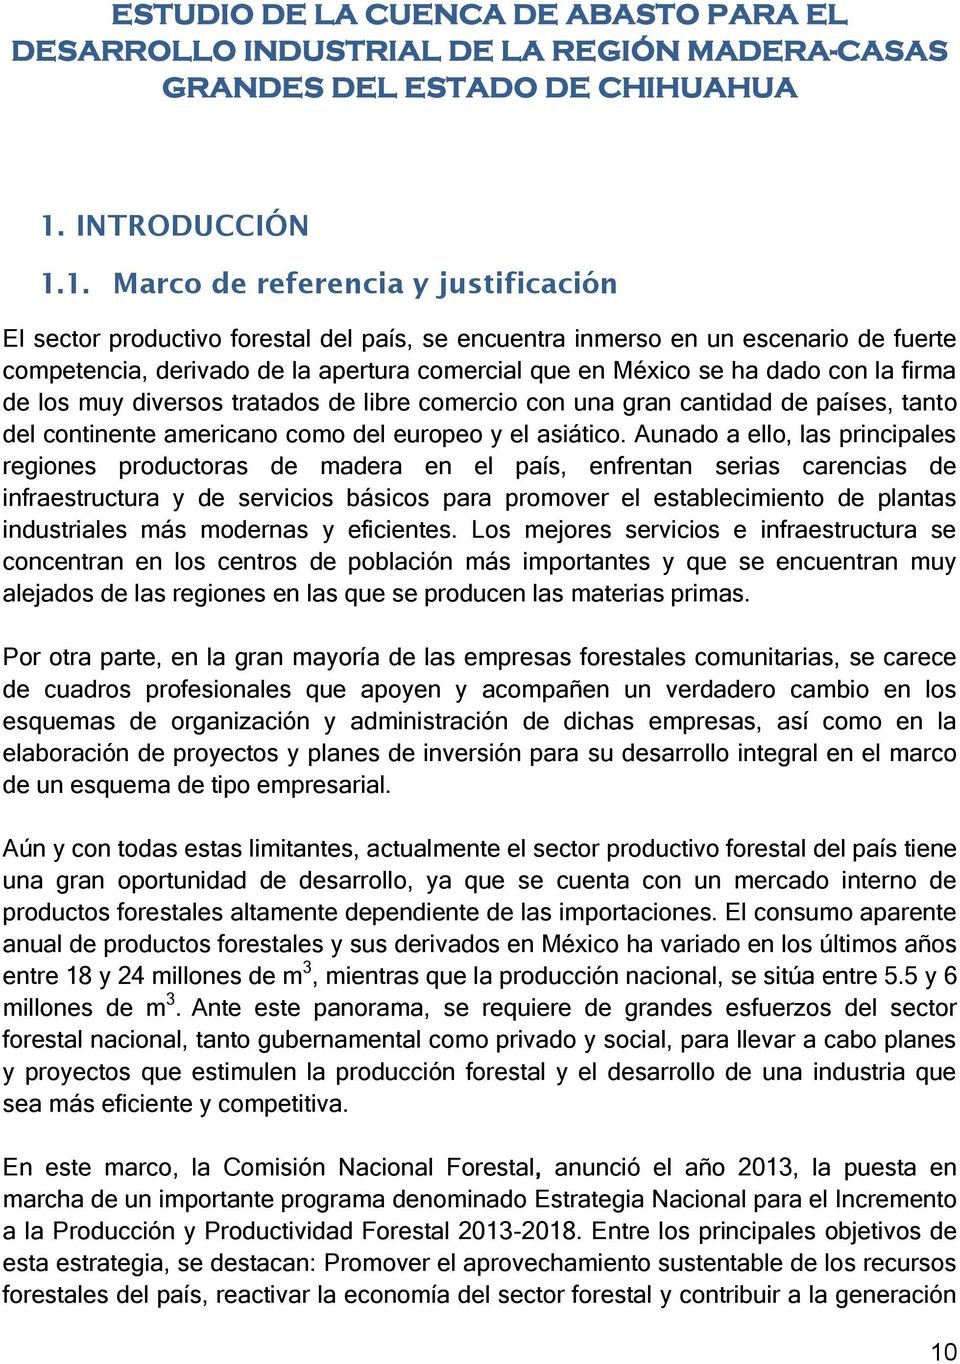 1. Marco de referencia y justificación El sector productivo forestal del país, se encuentra inmerso en un escenario de fuerte competencia, derivado de la apertura comercial que en México se ha dado